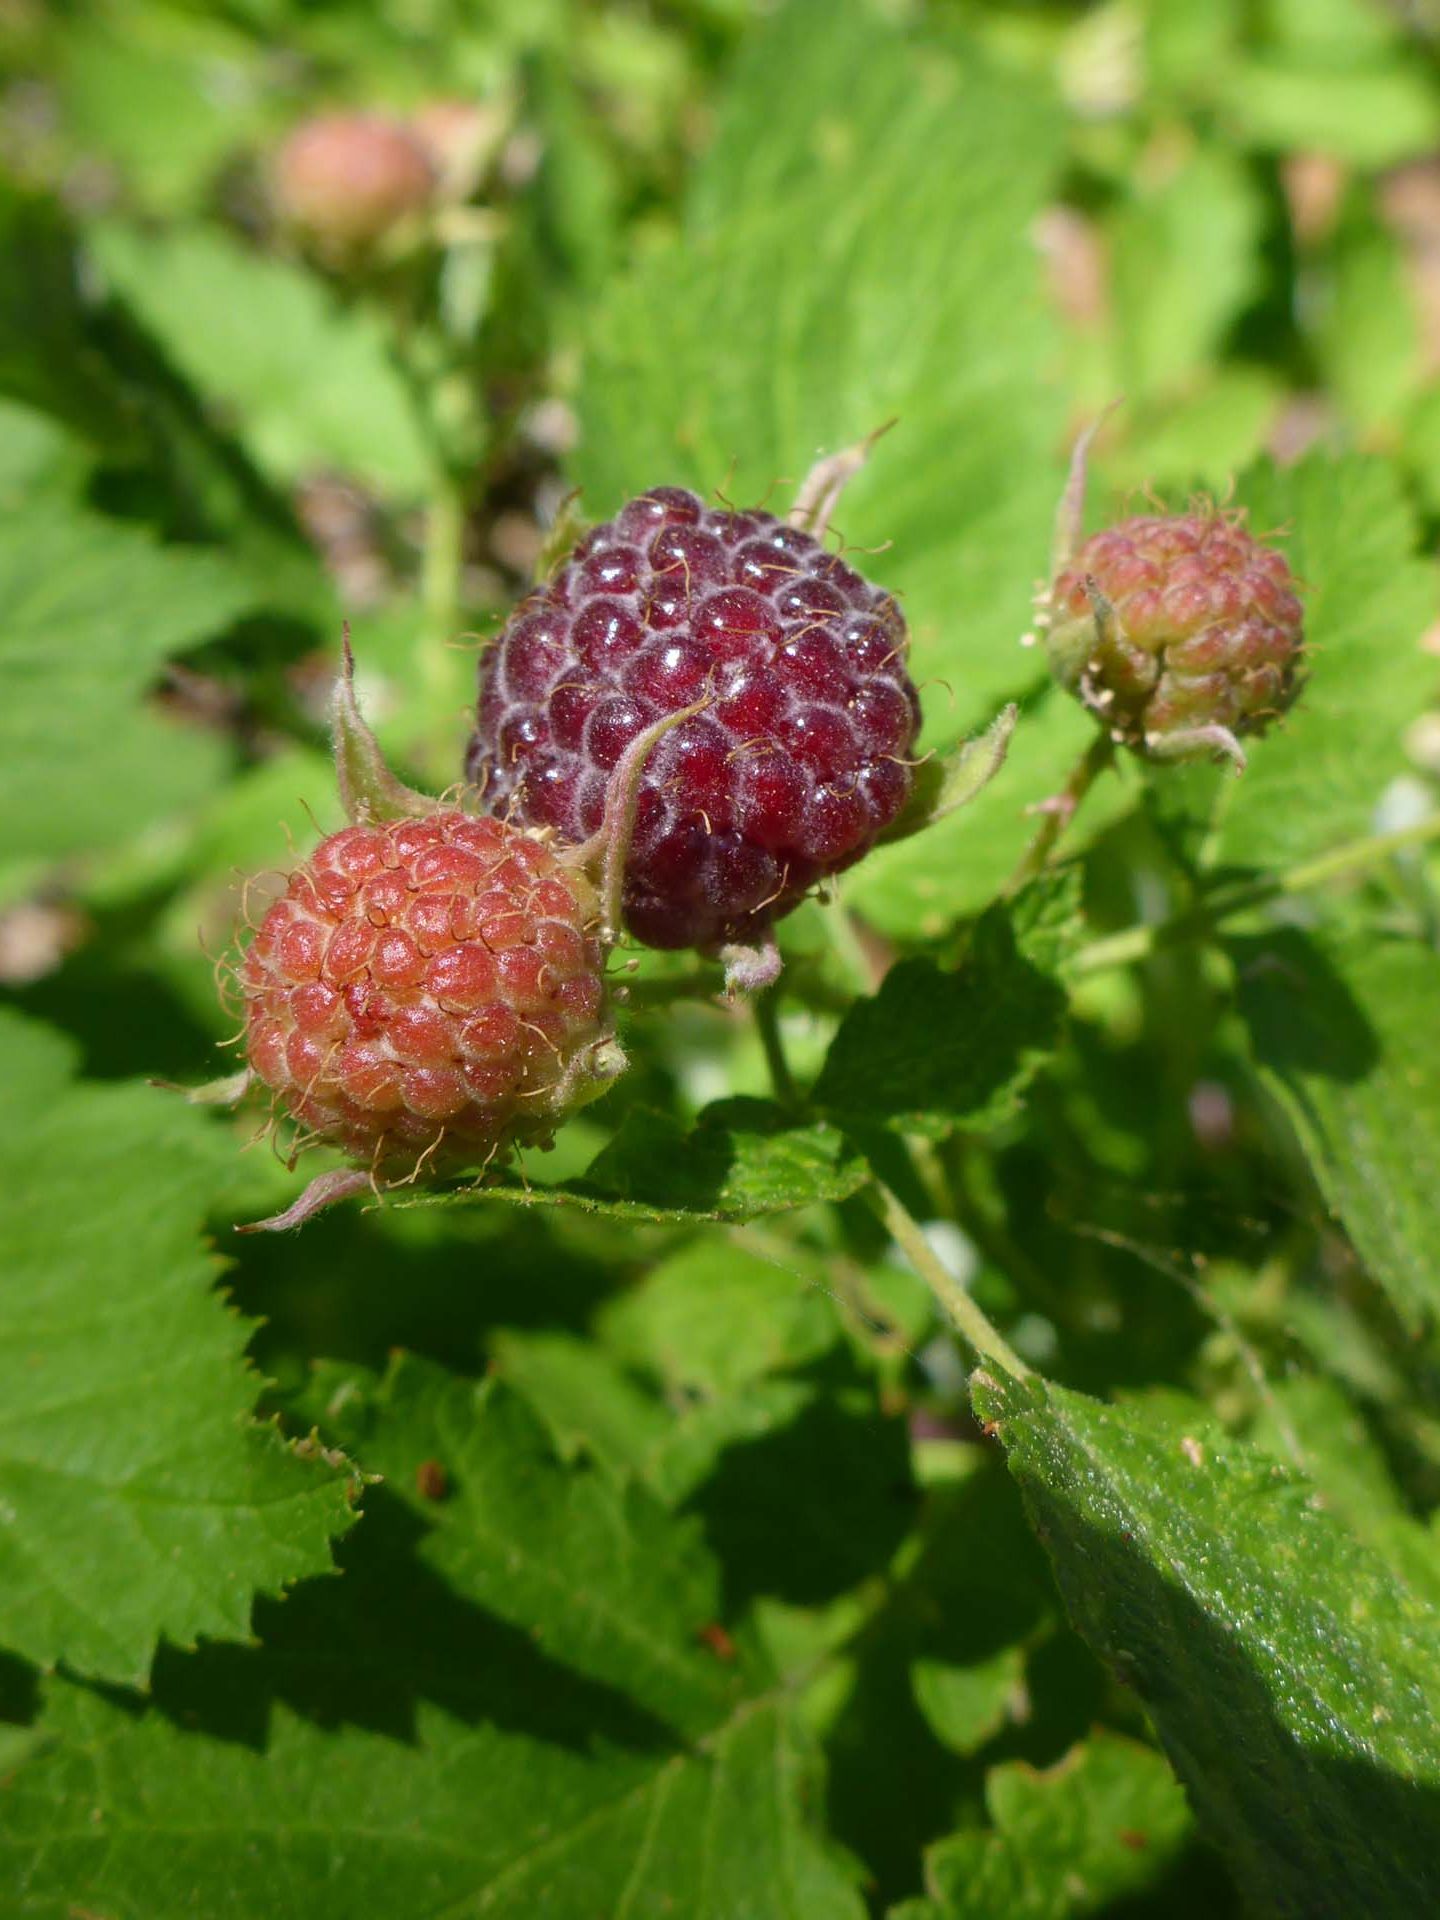 White-stemmed raspberry fruit. D. Burk.